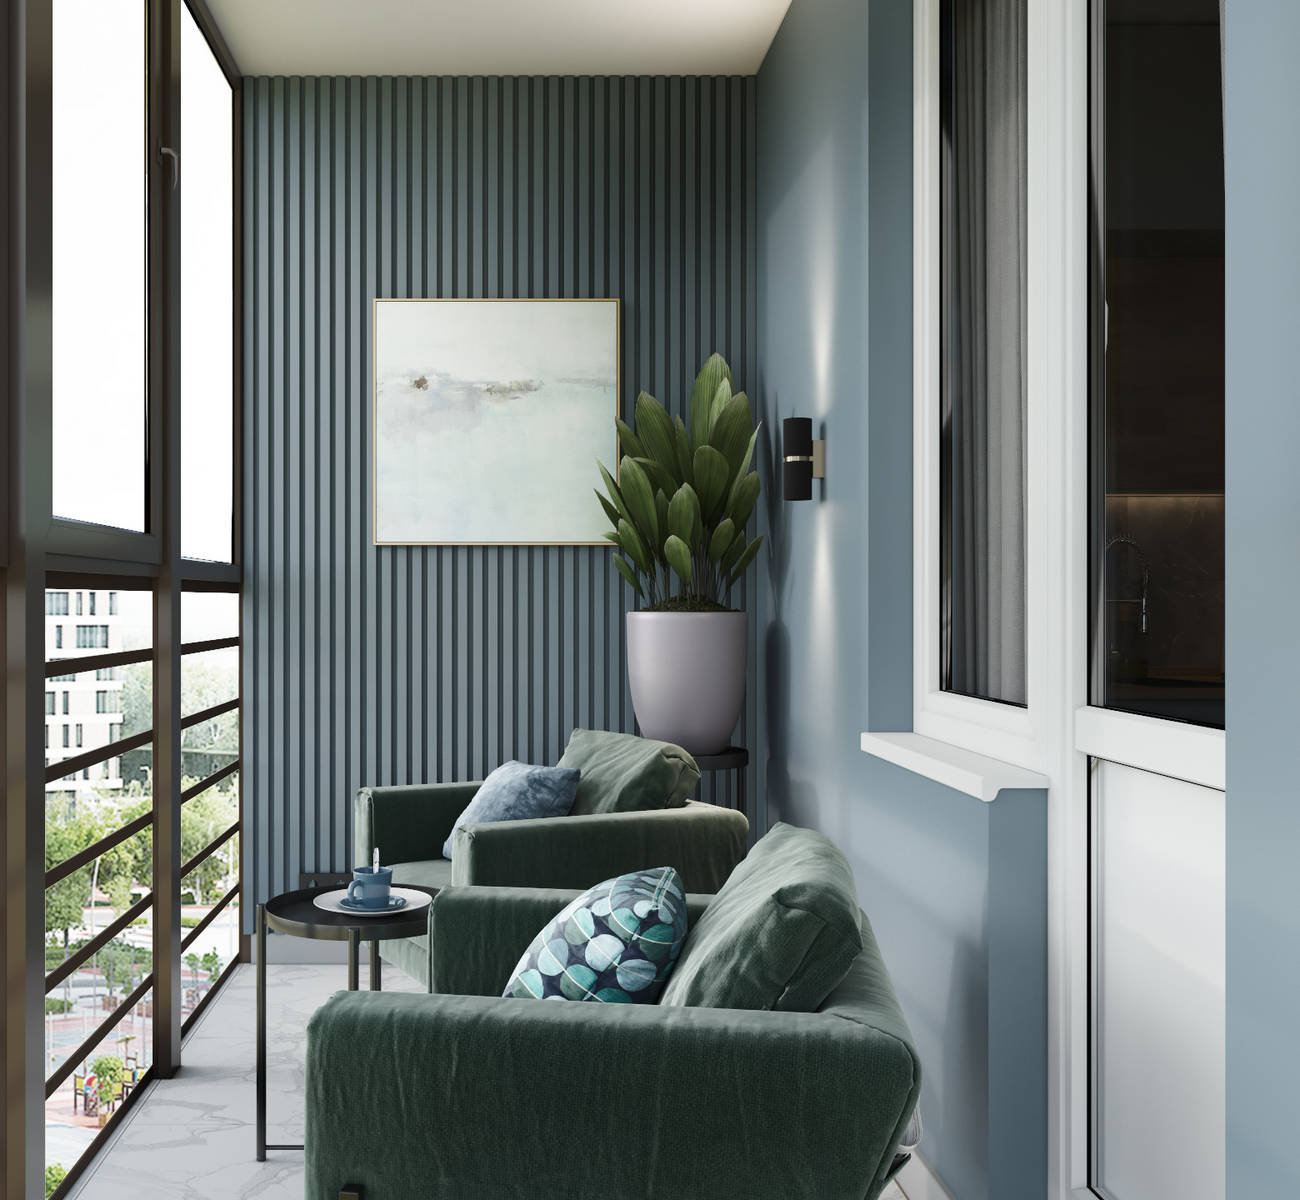 Bên ngoài căn hộ là một góc ban công nhỏ xinh với lam gỗ sơn màu xanh nhạt, bộ ghế bành và bàn nước nhỏ tạo nên một phòng khách phụ cũng như không gian thư giãn cho chủ nhân ngắm nhìn khung cảnh bên ngoài.